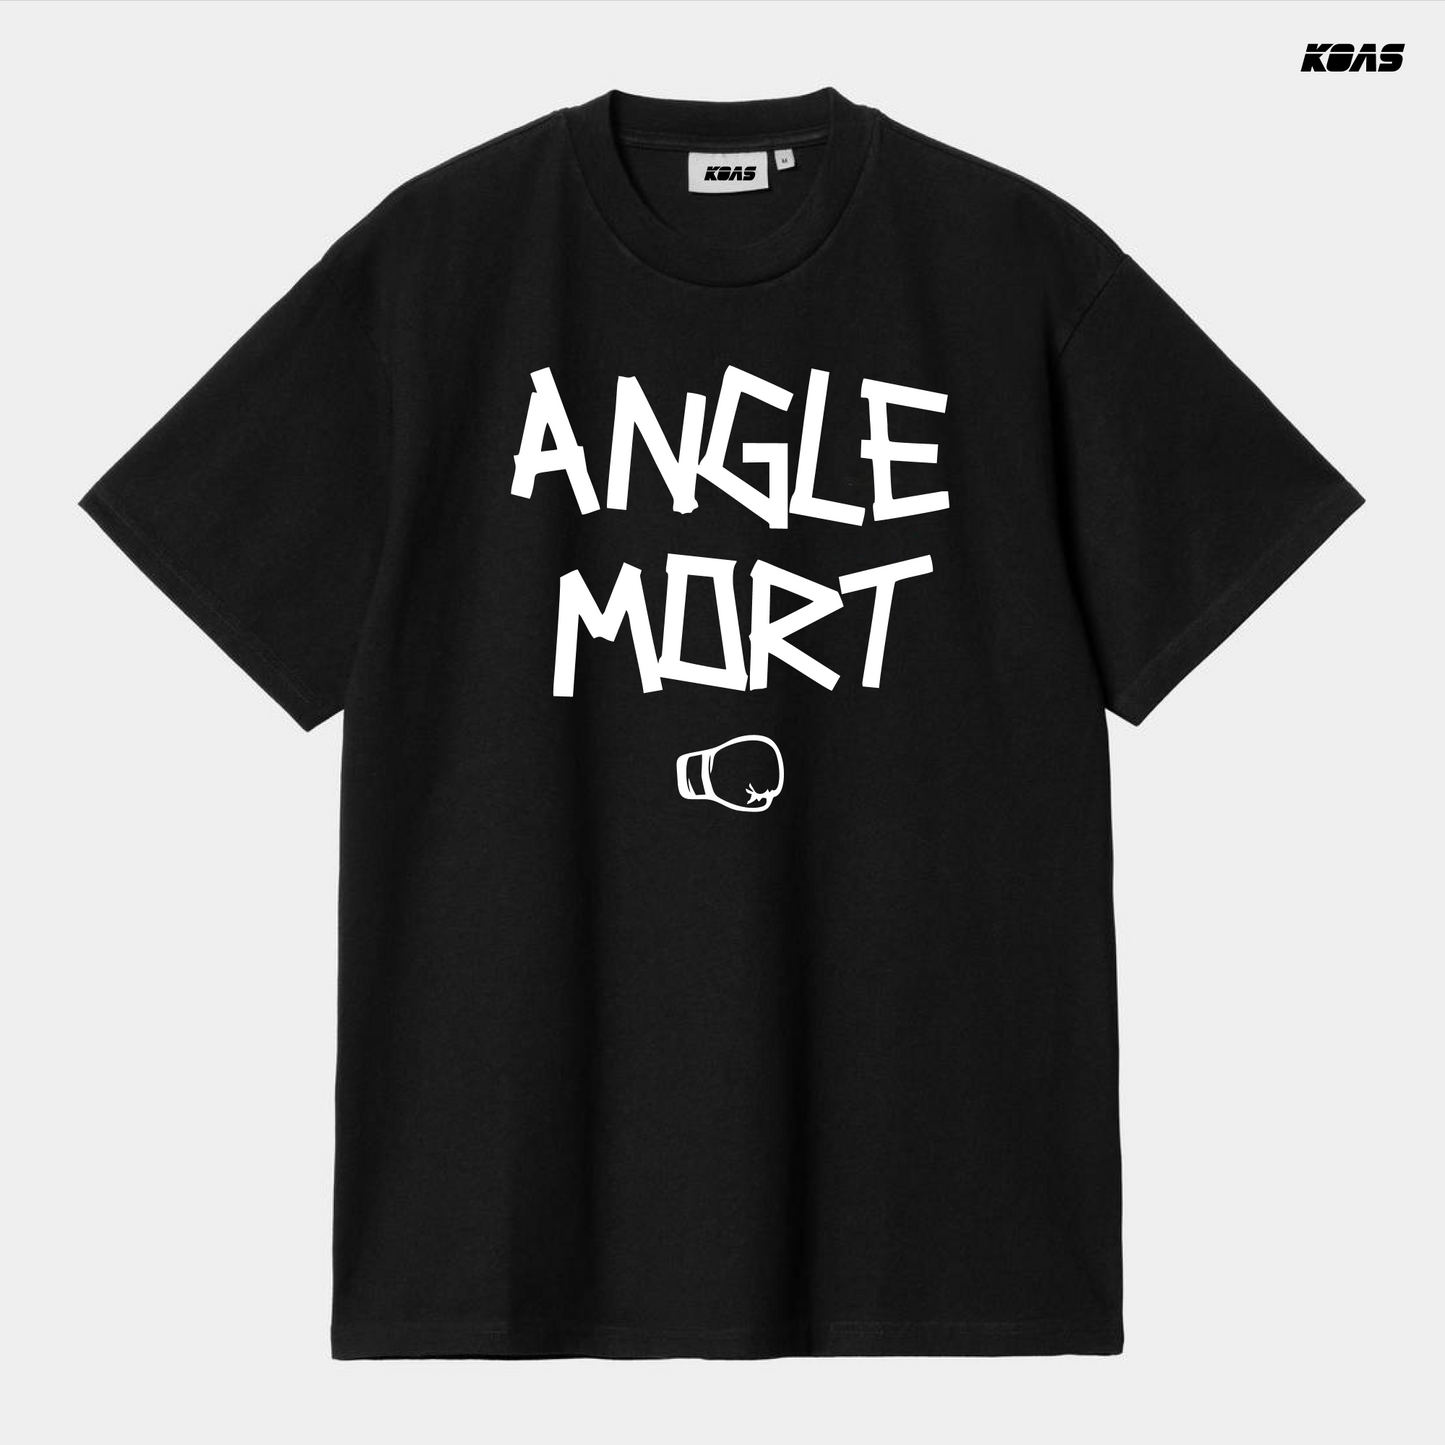 Angle mort - Tshirt